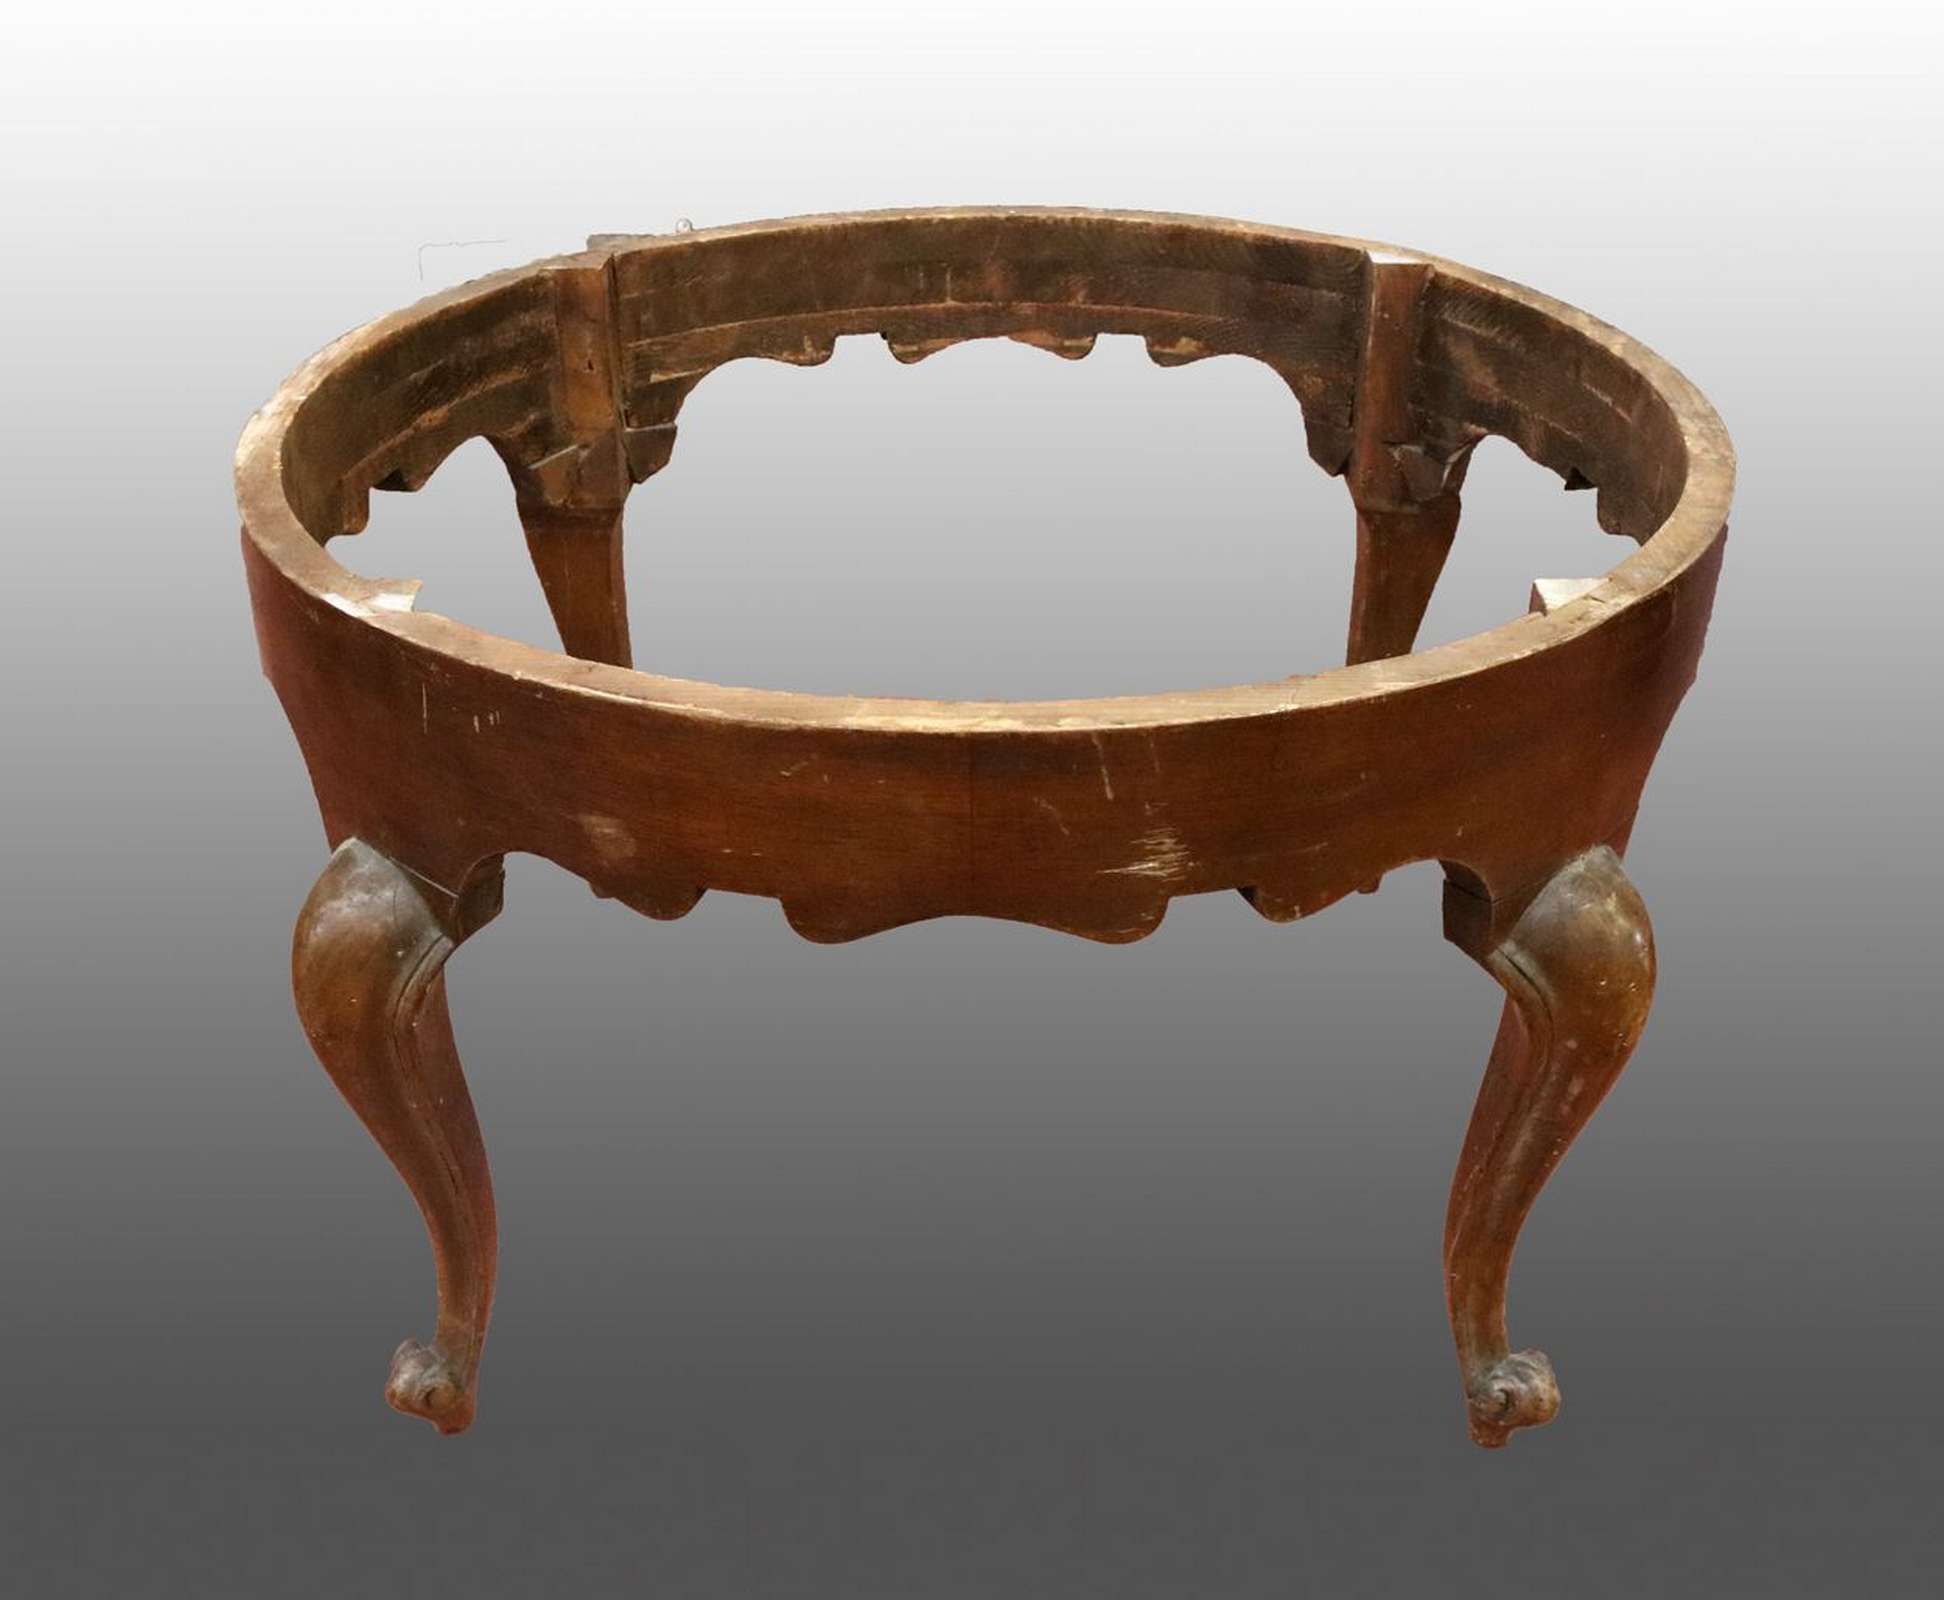 Antica base da tavolo in legno. Epoca primi 1900. - Tavoli in legno - Tavoli e complementi - Prodotti - Antichità Fiorillo